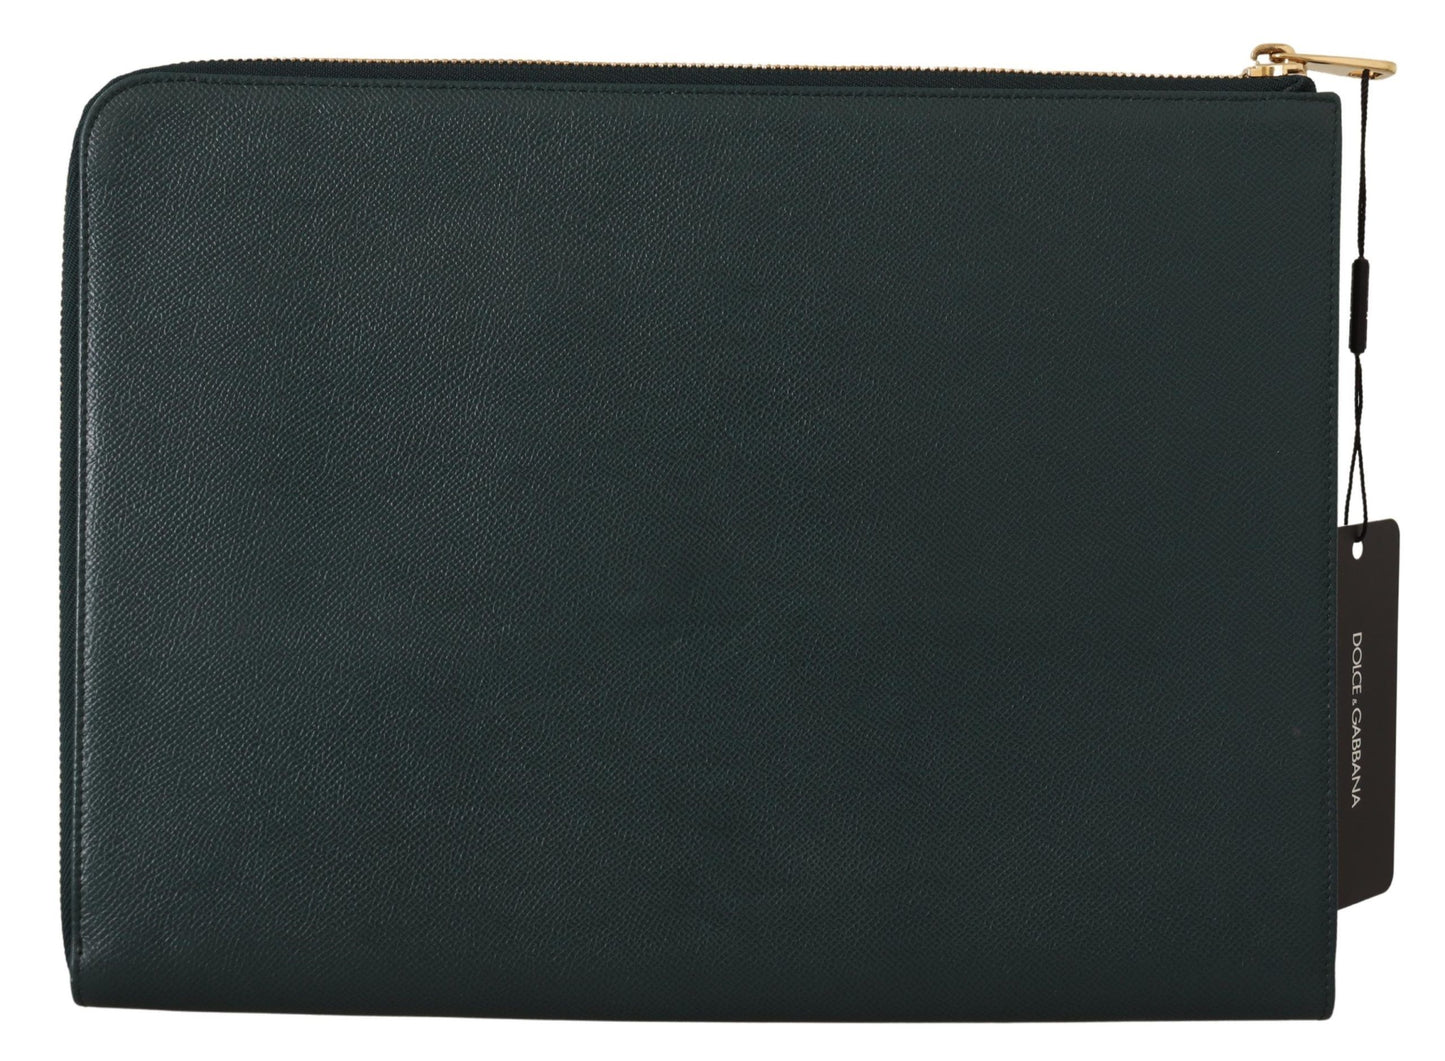 Elegant Green Leather Document Holder